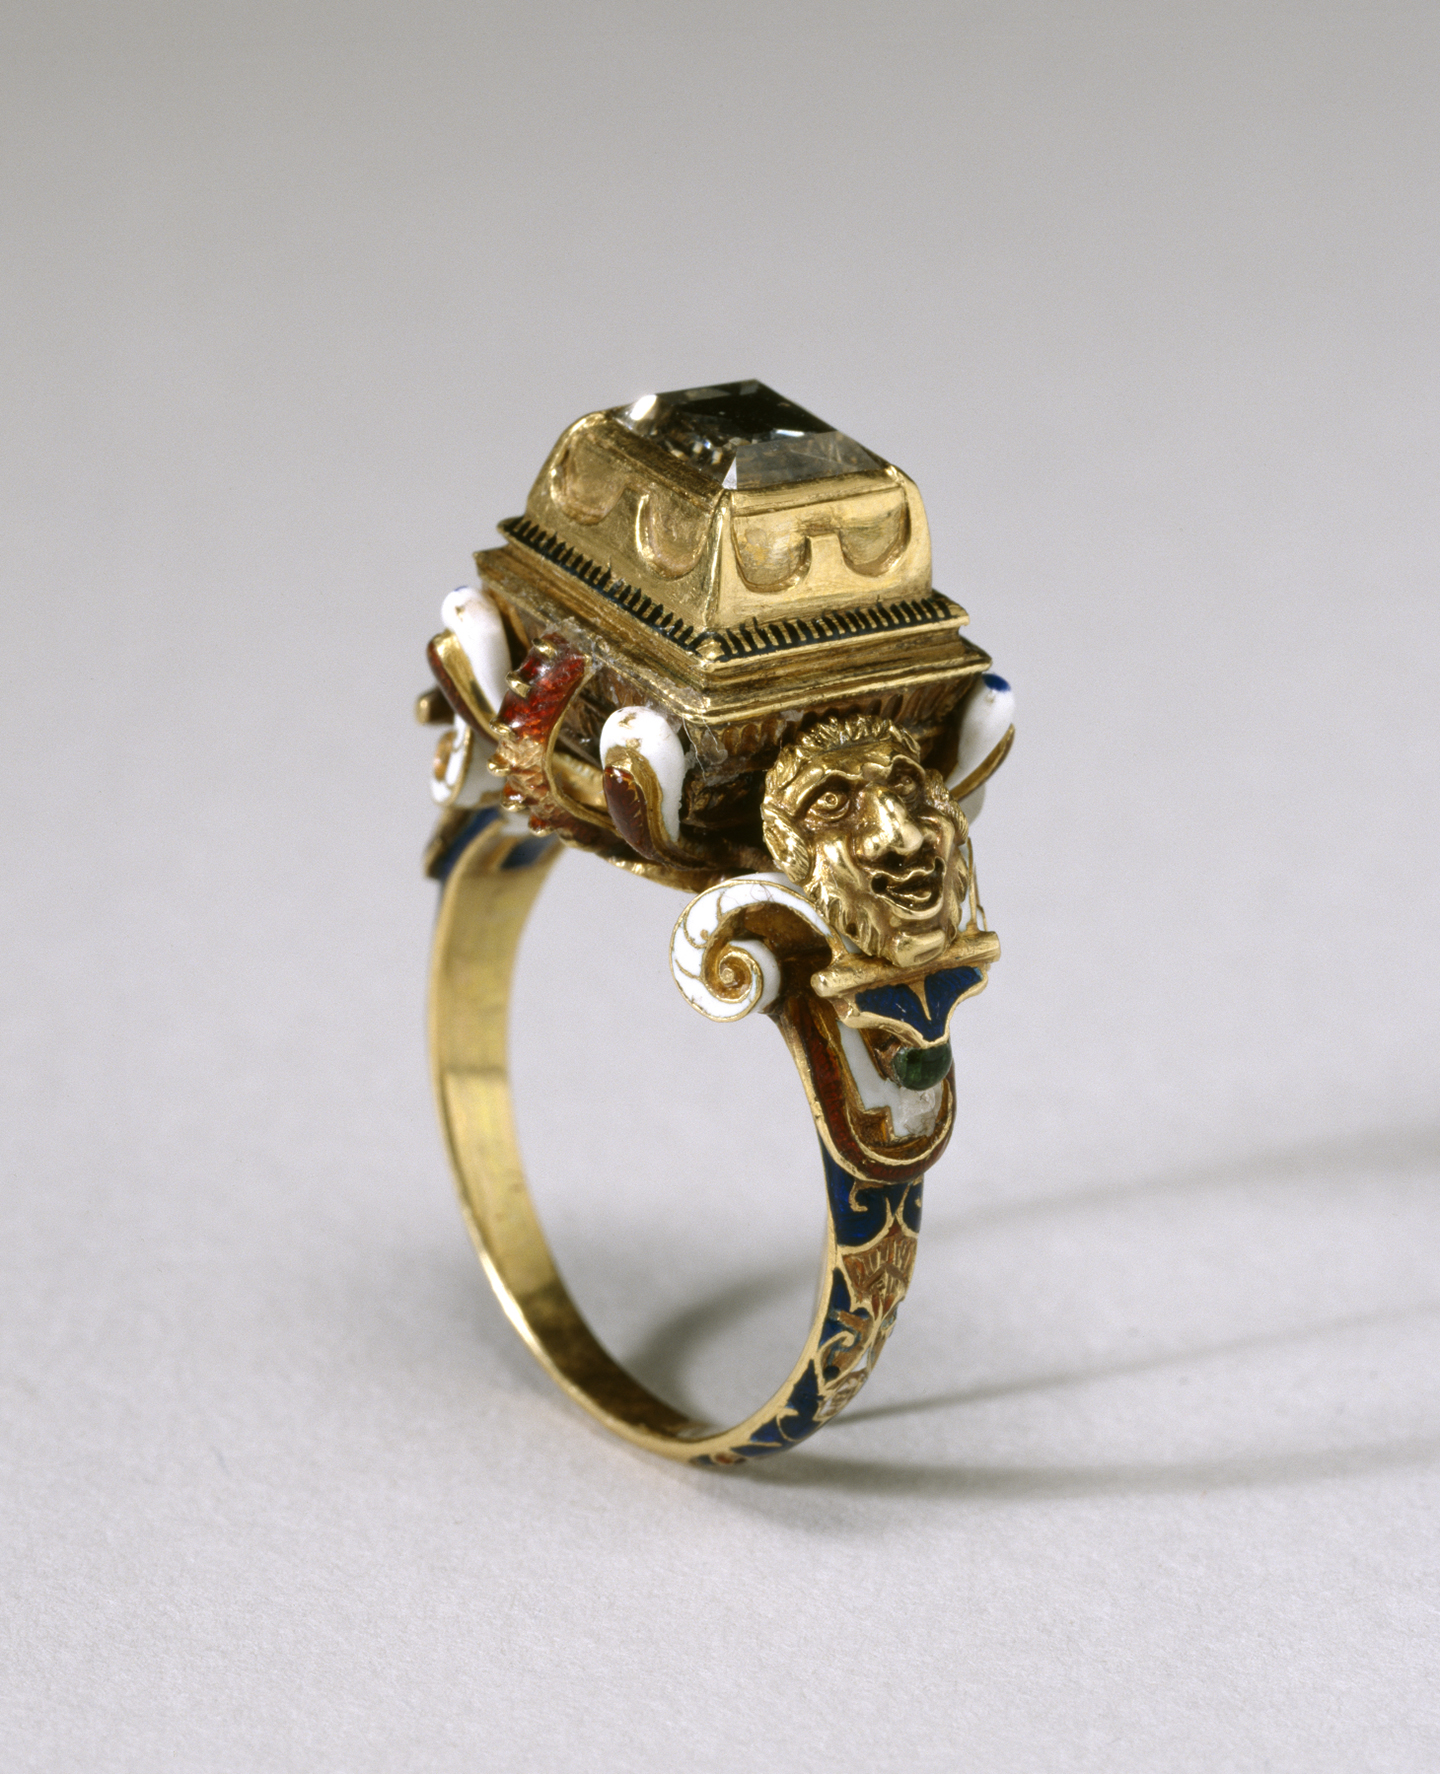 Một chiếc nhẫn kim cương từ thế kỷ 16; gồm có vàng, sứ tráng men, kim cương; kích thước 1 ½ inch (~3,8cm). Bảo tàng Nghệ thuật Walters, thành phố Baltimore. (Ảnh: Tư liệu công cộng)